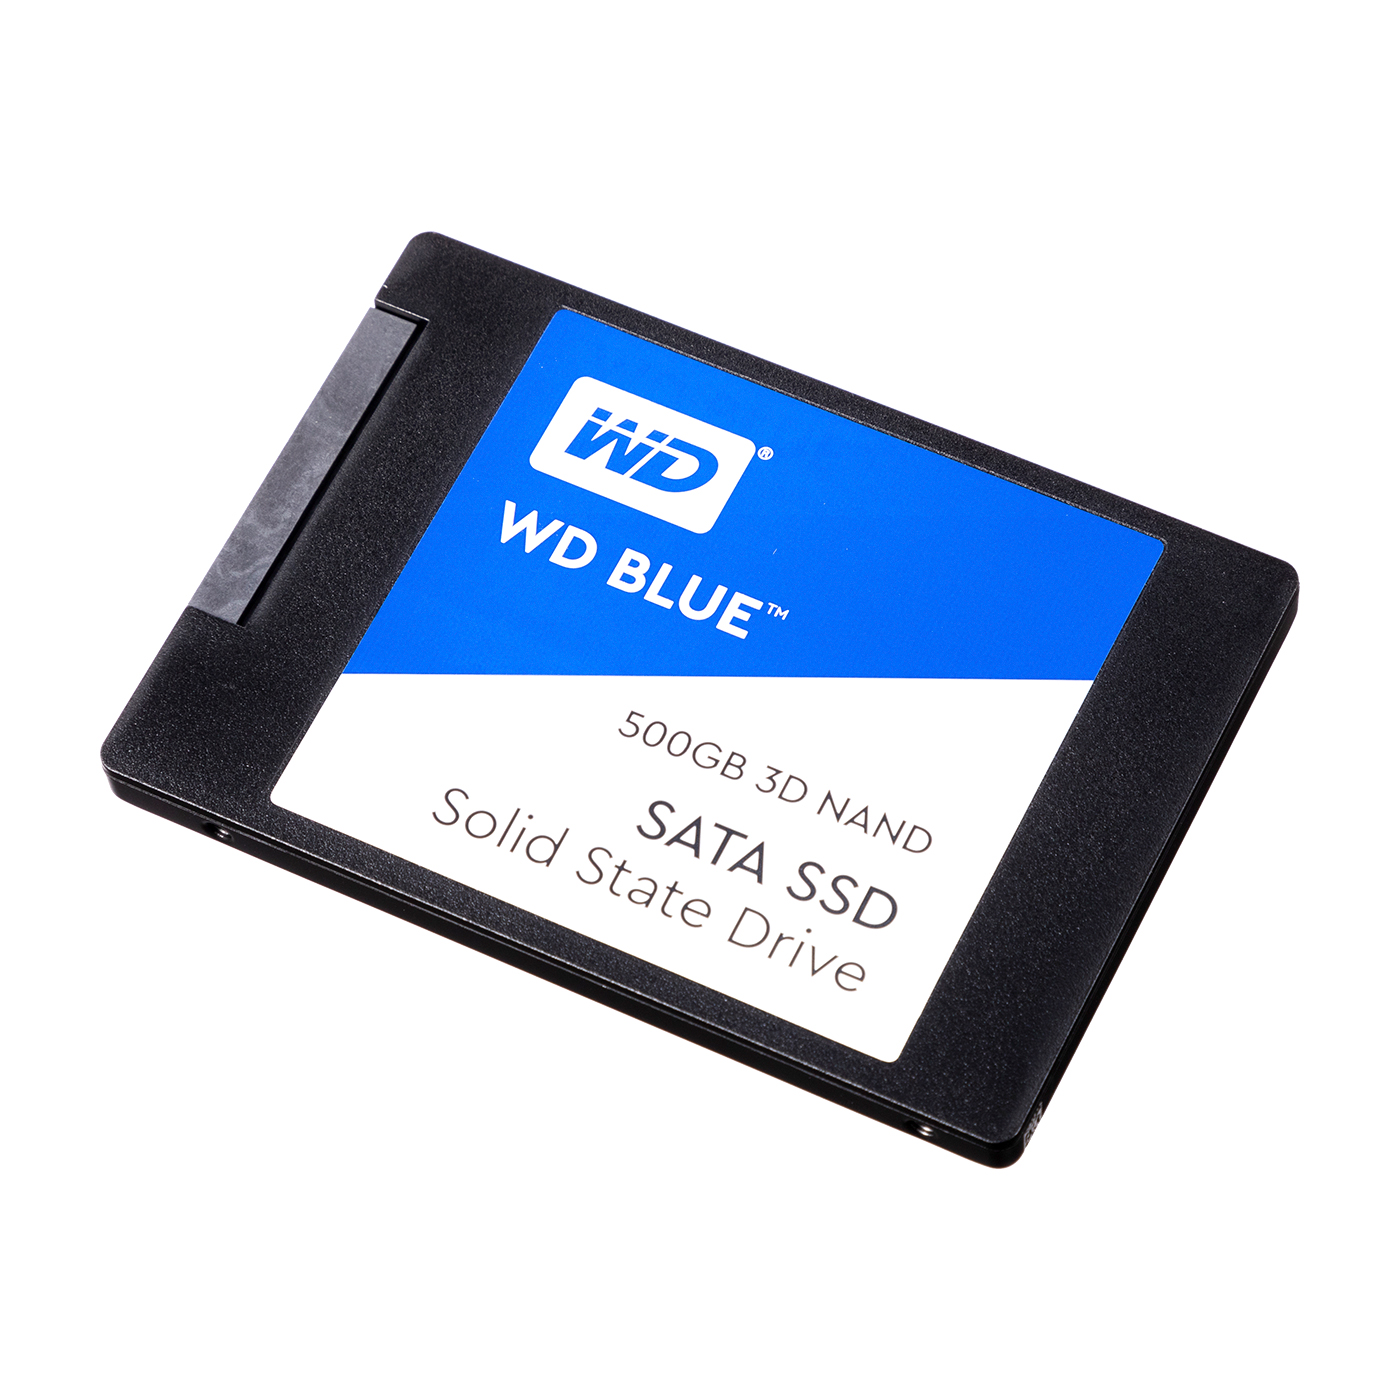 出群 Western Digital ウエスタンデジタル WD Blue SATA SSD 内蔵 2TB 2.5インチ 読取り最大 560MB s  書込